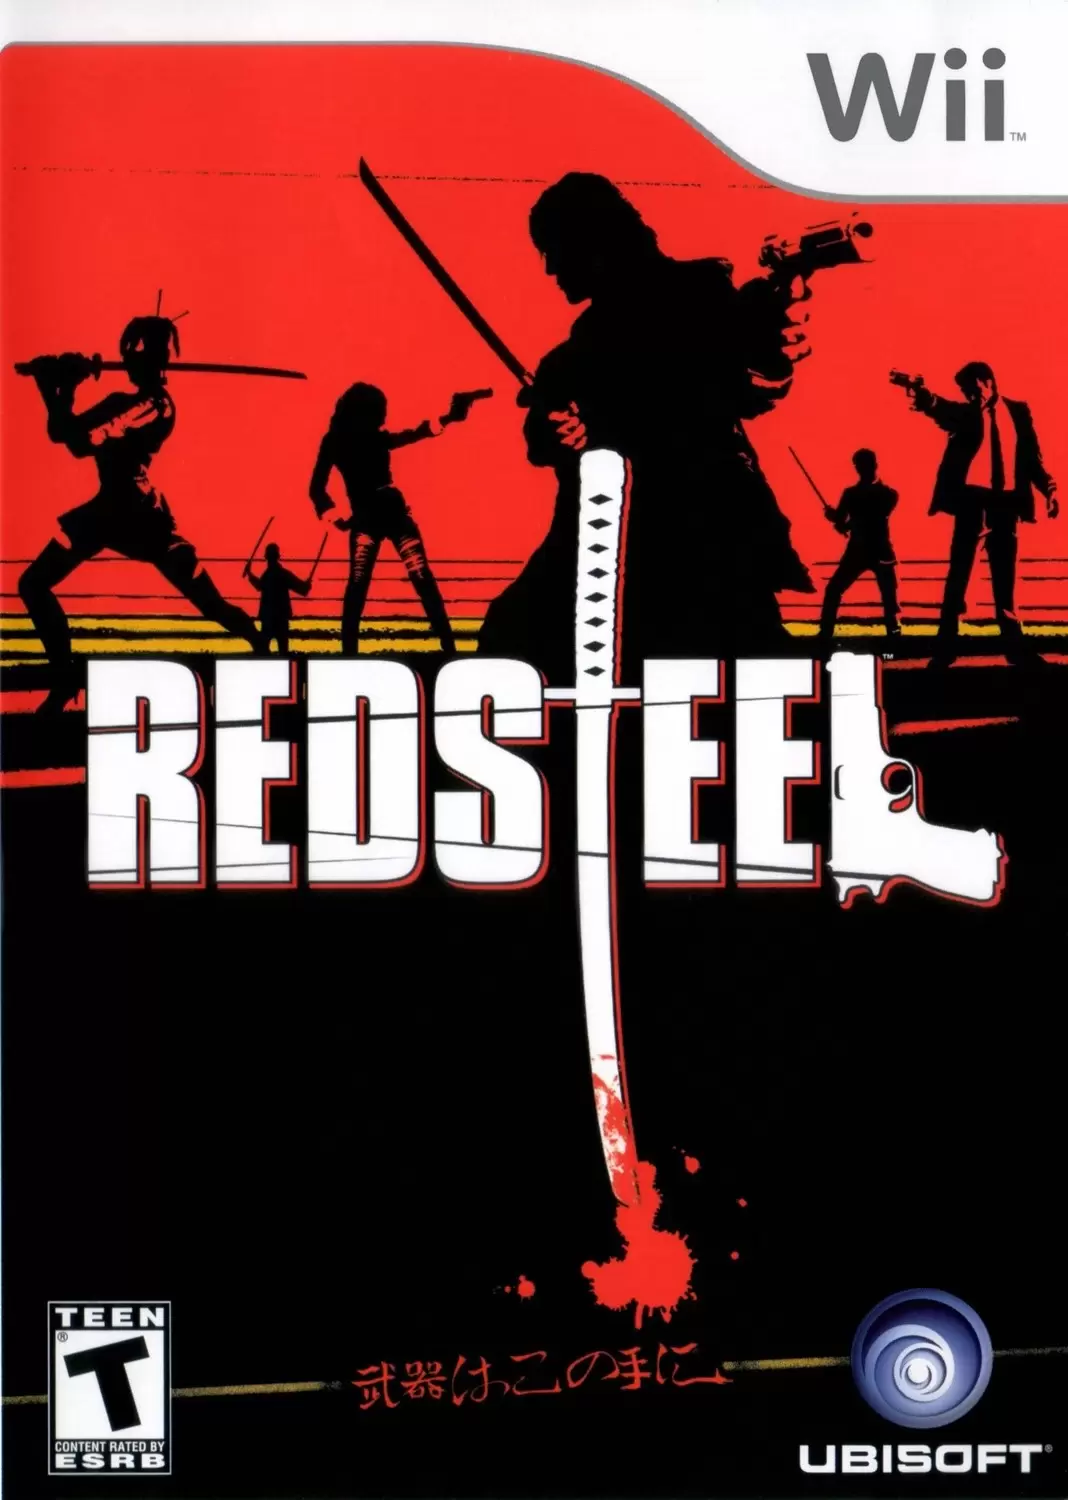 Nintendo Wii Games - Red Steel